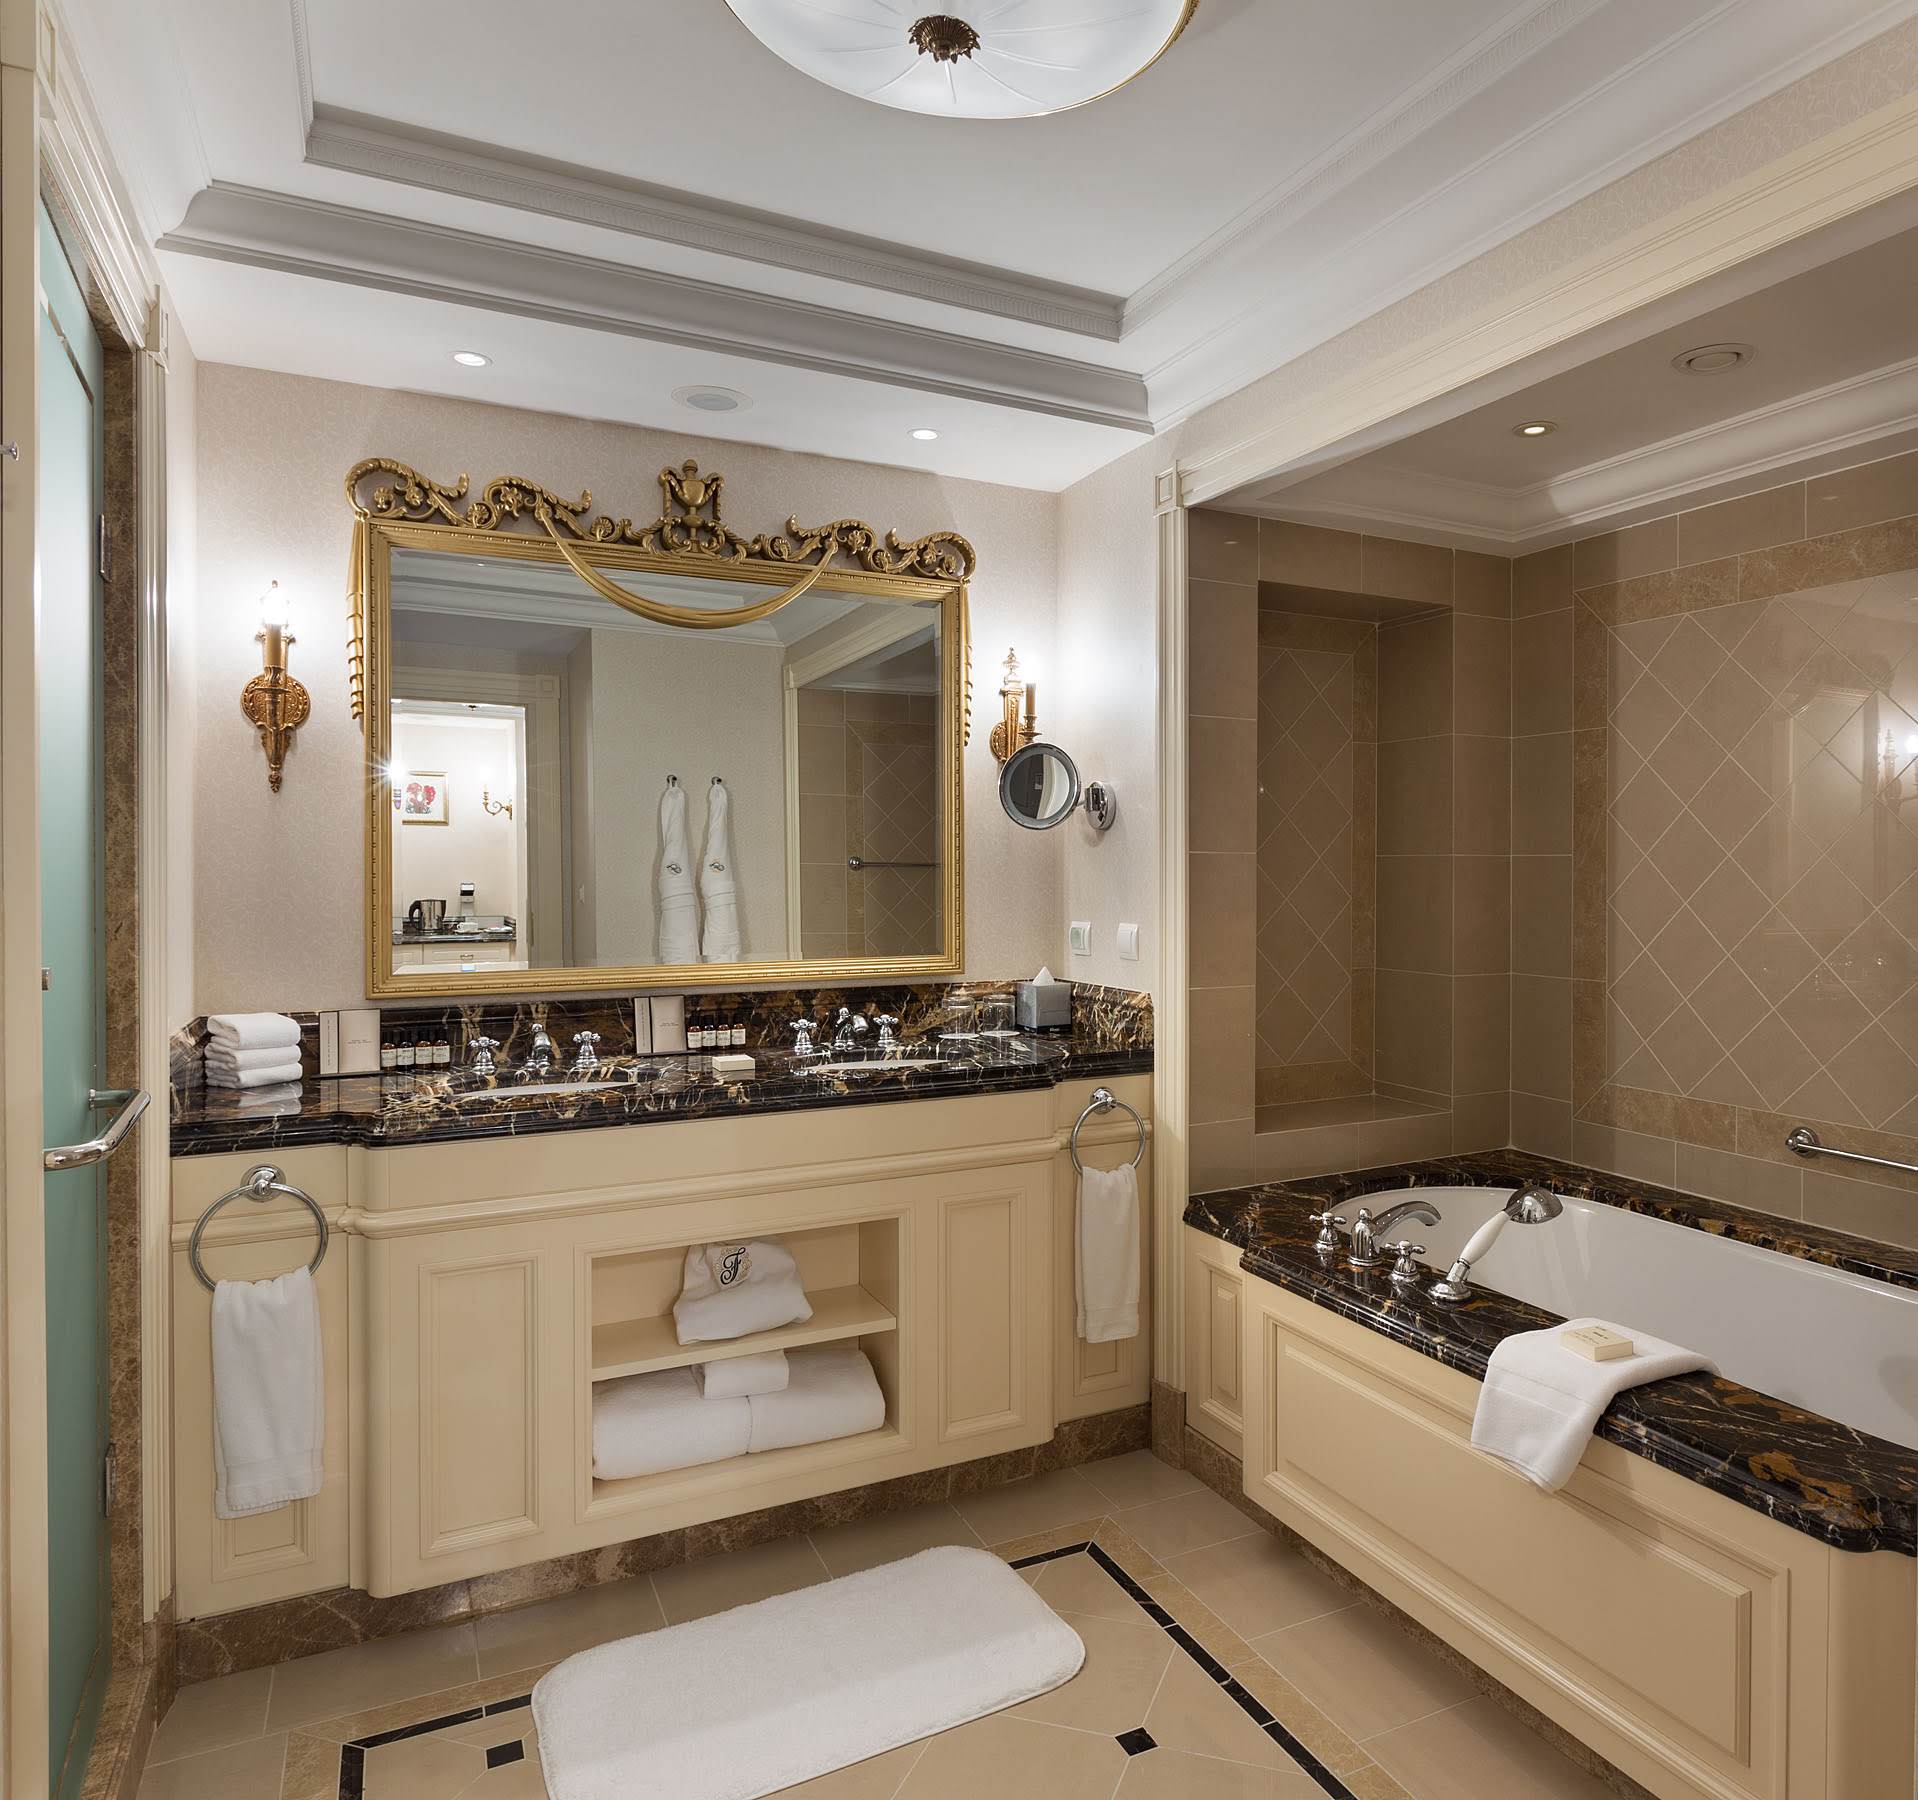 Bathroom interior in a hotel